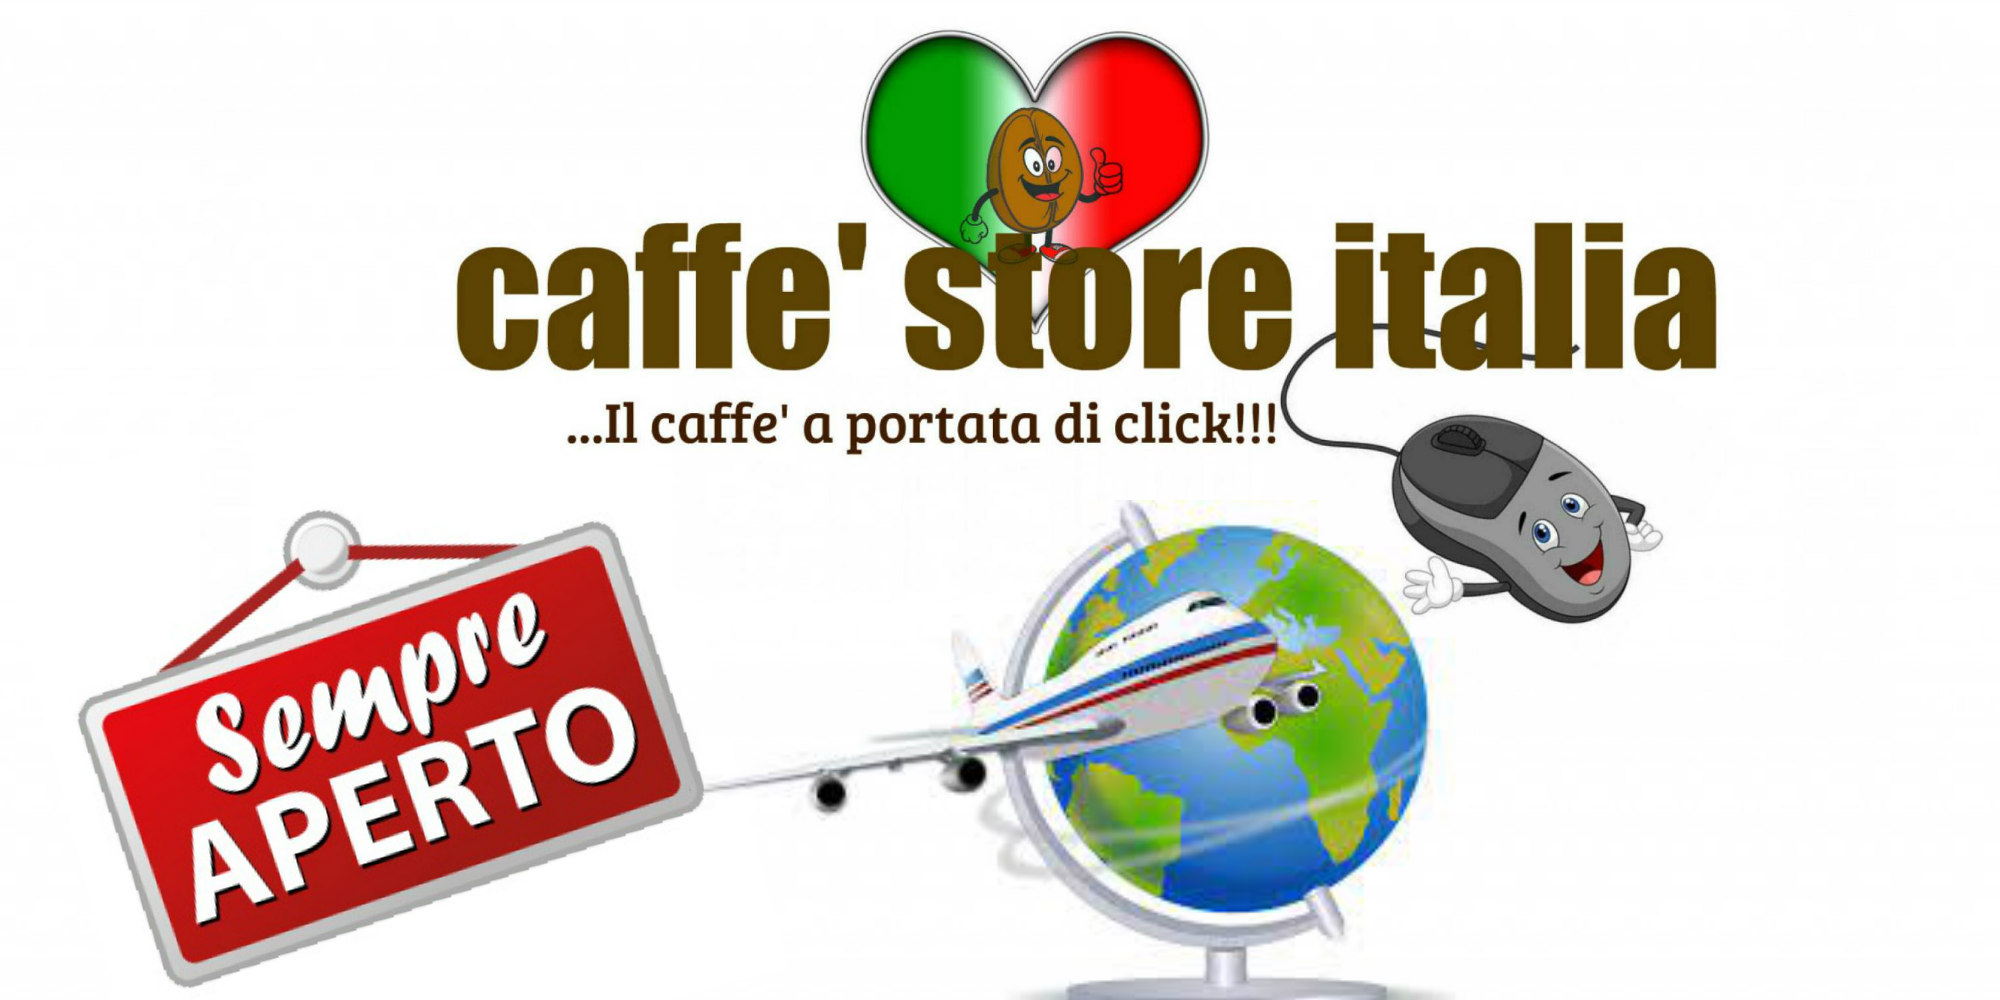 Caffè Store Italia rimane aperto per tutta l'estate